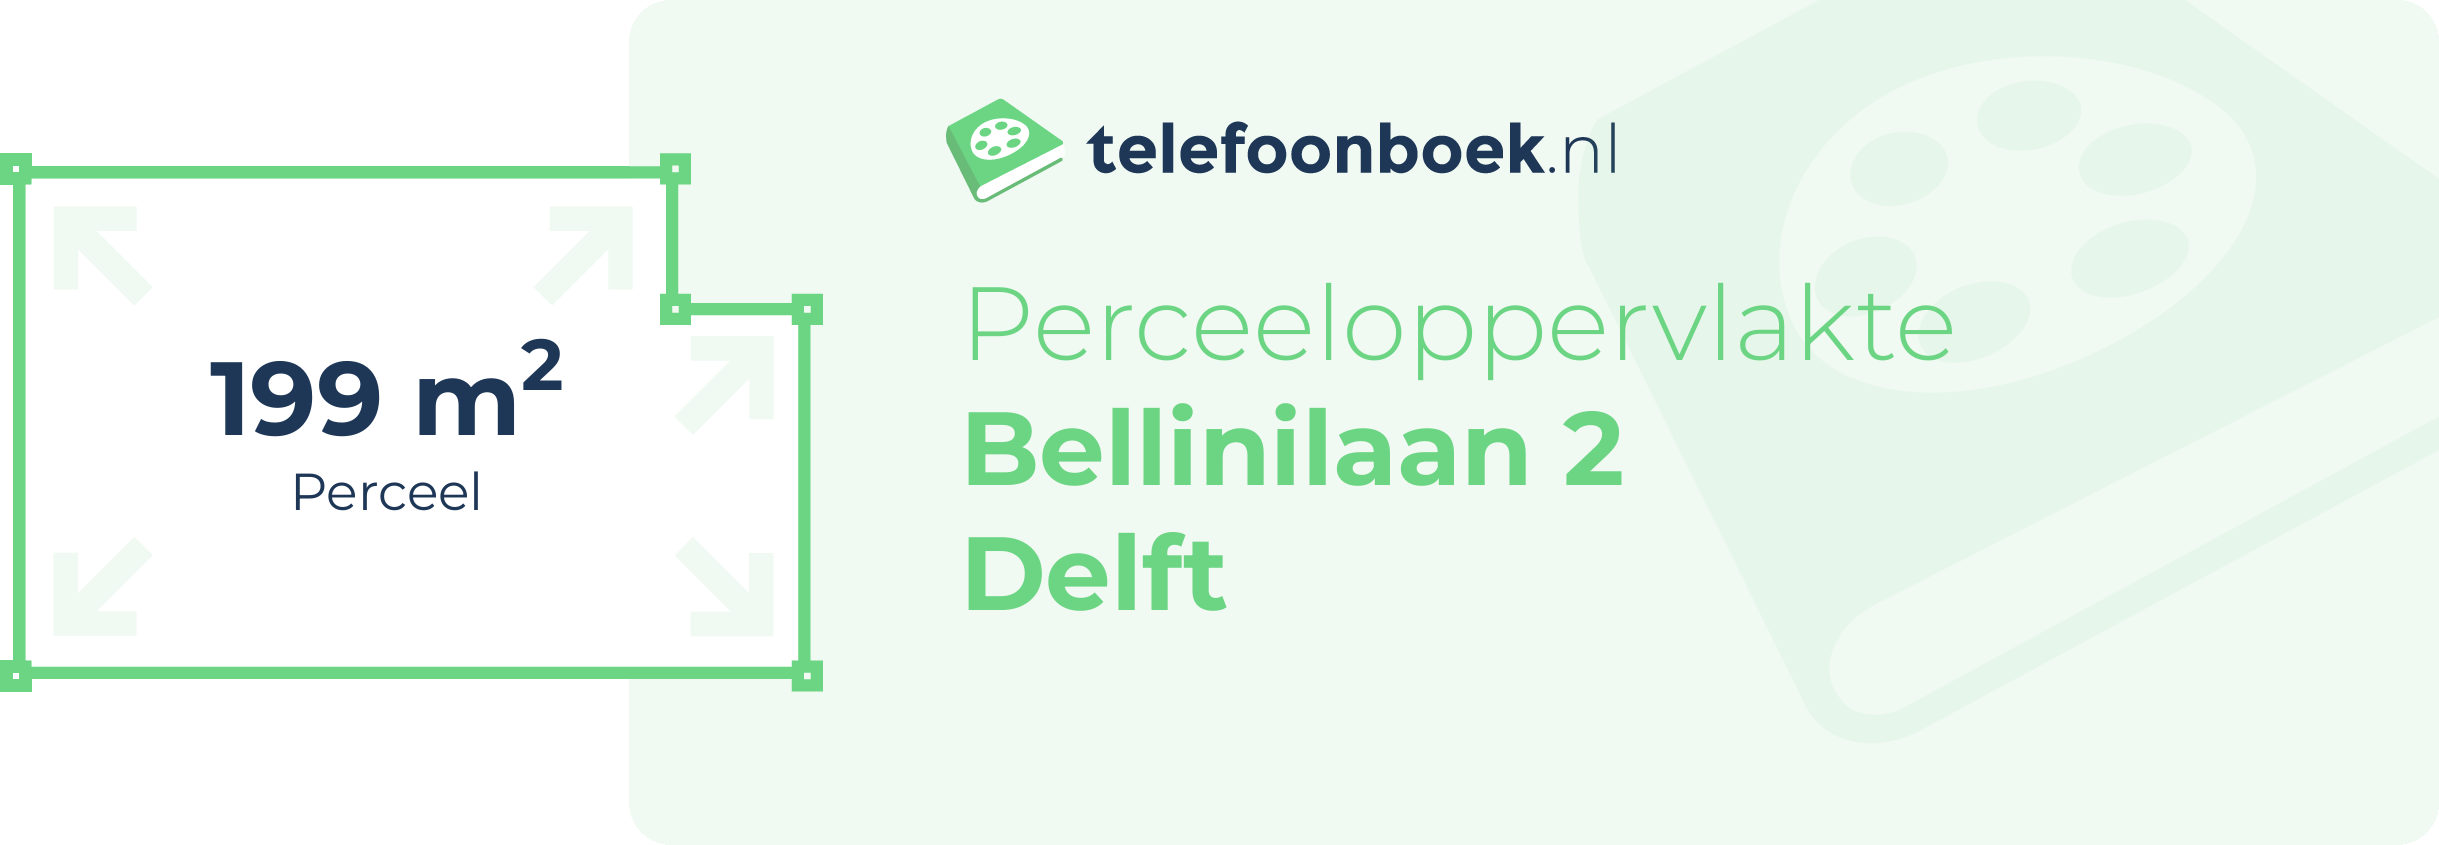 Perceeloppervlakte Bellinilaan 2 Delft